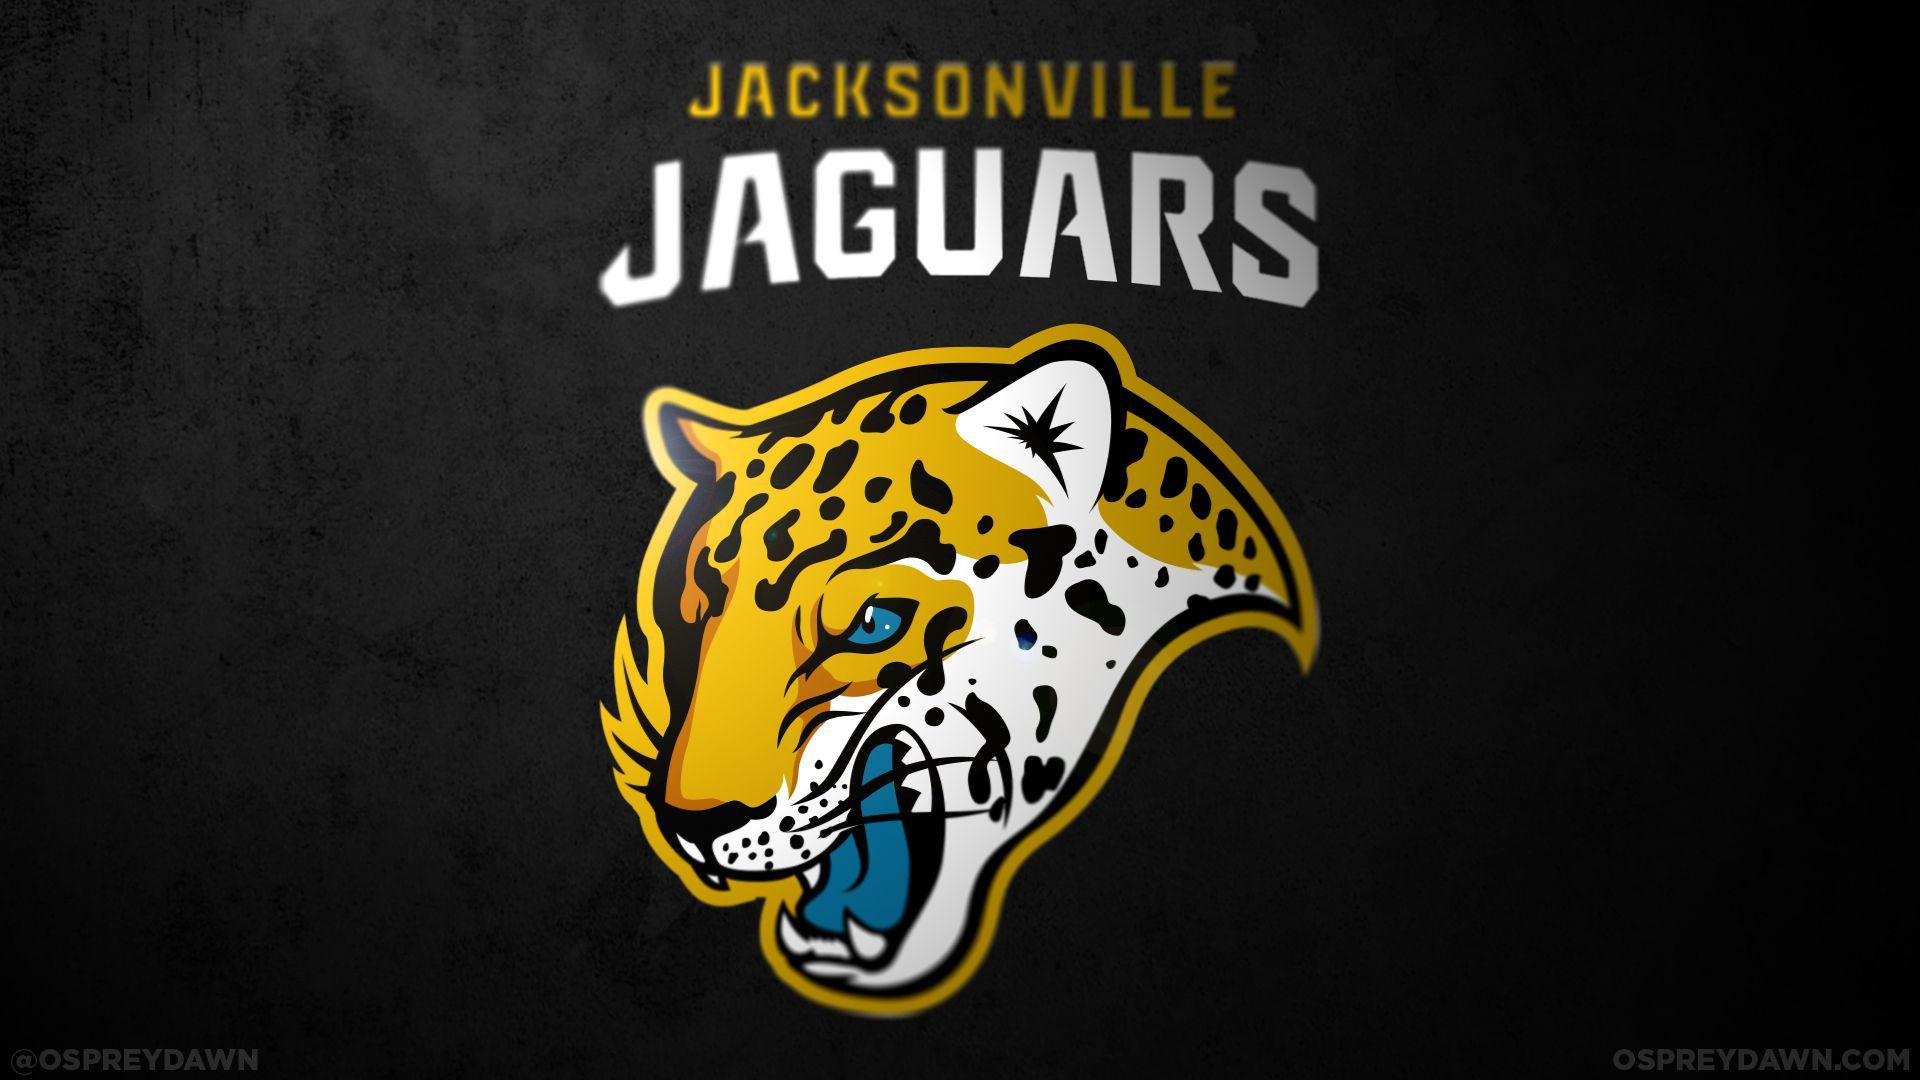 NFL Jaguars New Logo - Redesigned NFL Logos: Jacksonville Jaguars